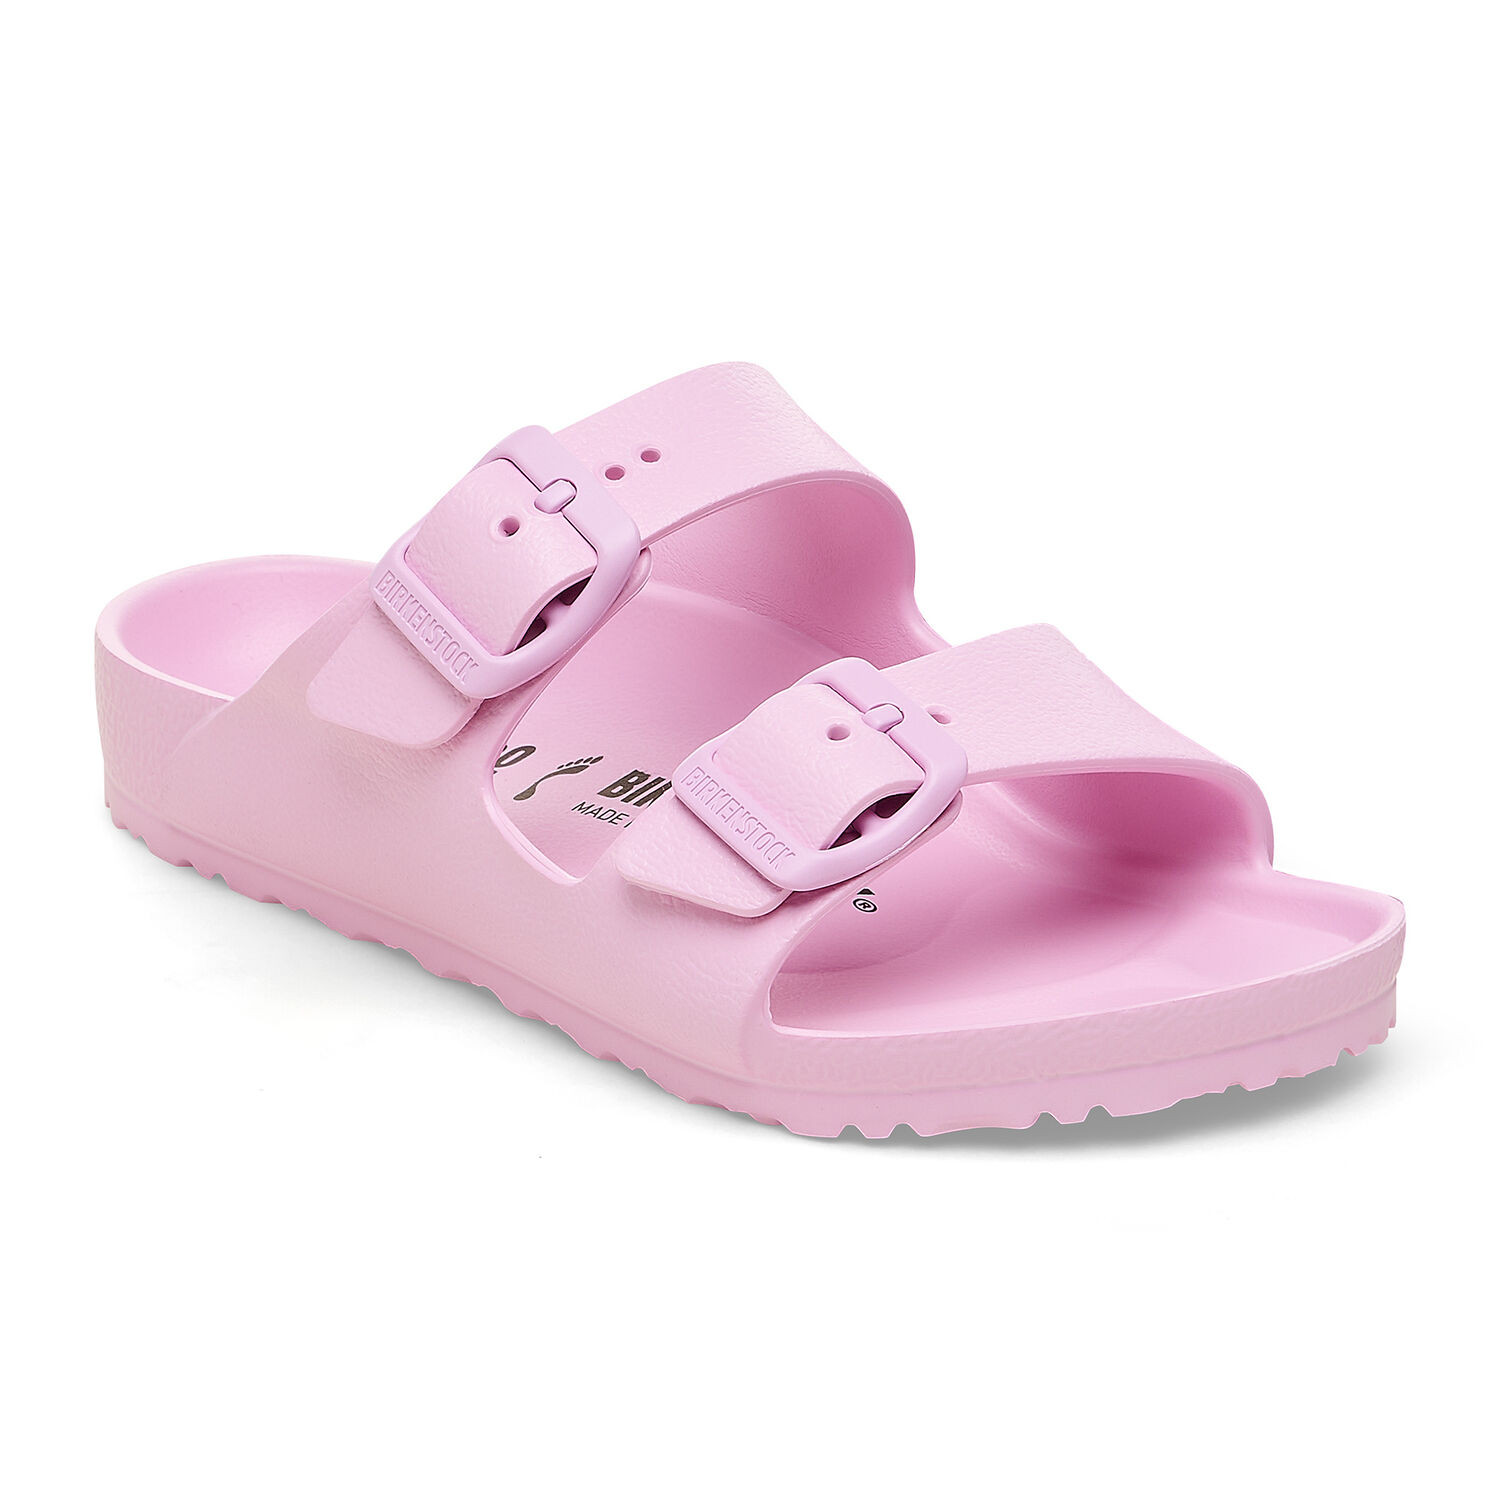 Une paire de sandales Birkenstock Arizona pour enfants roses sur un fond blanc. Les sandales ont une assise anatomique en liège et une semelle extérieure en EVA souple. Les sandales ont deux boucles métalliques pour un ajustement sûr.